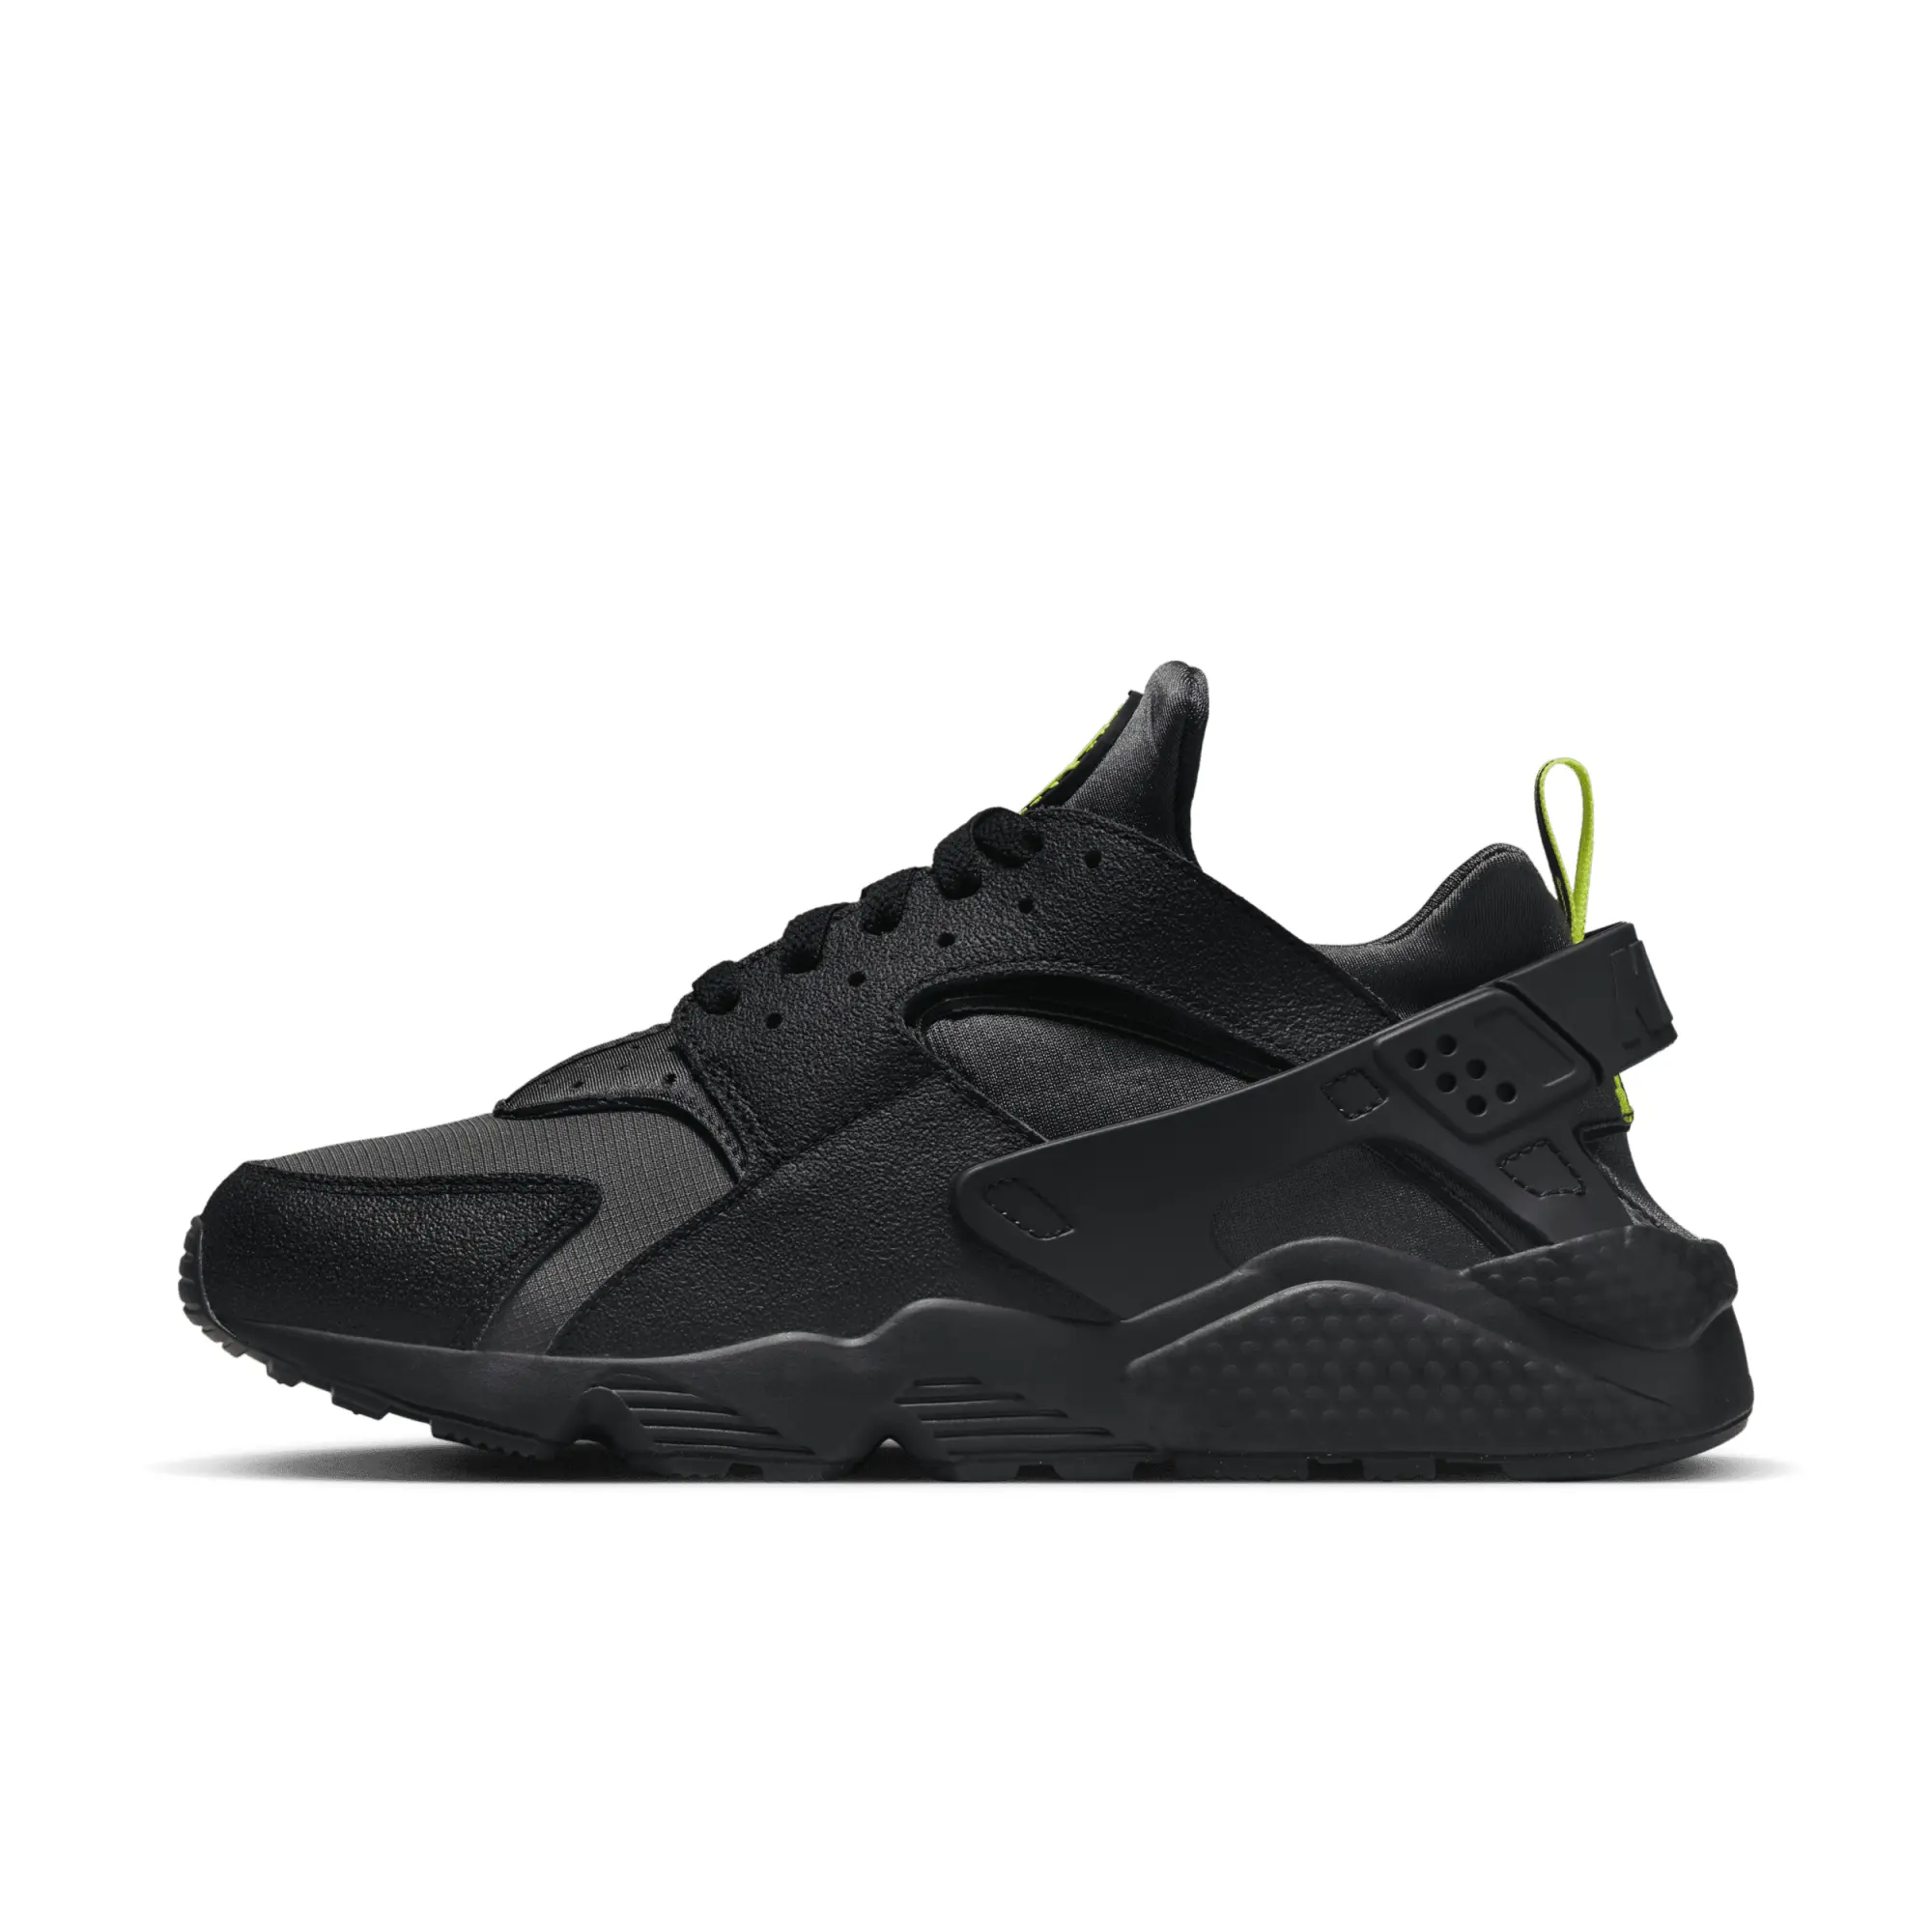 Nike air huarache trainers in dark grey